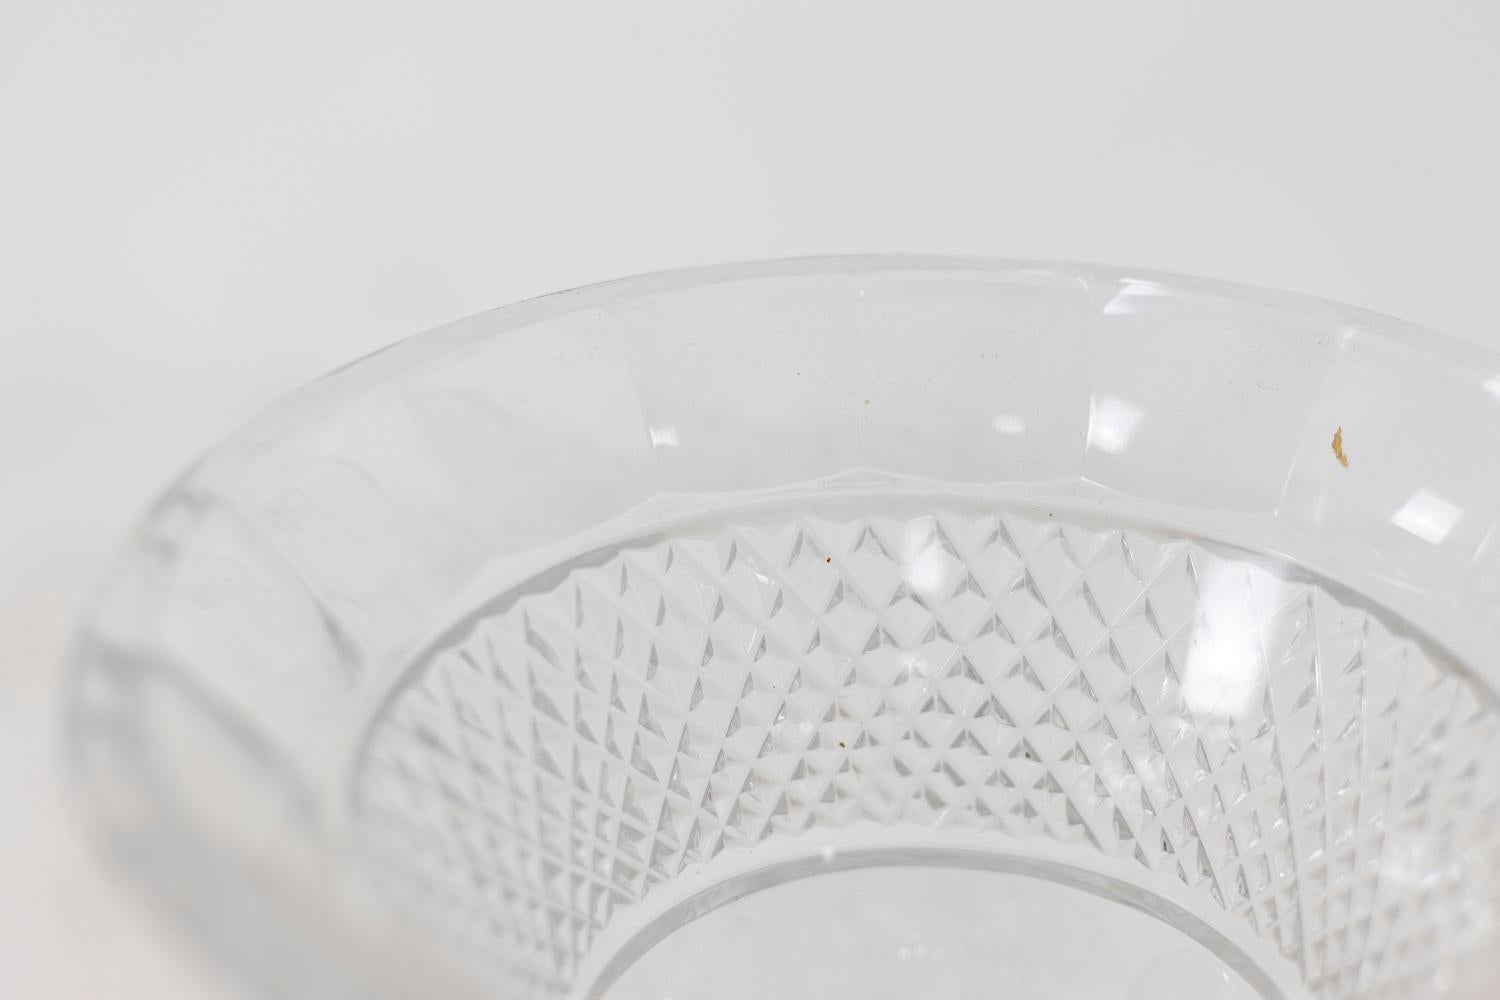 Vase in Medici-Form aus geschliffenem und ziseliertem Kristall, der Korpus mit Rautenmotiven verziert. Quadratischer Sockel mit strahlenförmigem Muster.

Französische Arbeiten aus dem zwanzigsten Jahrhundert.